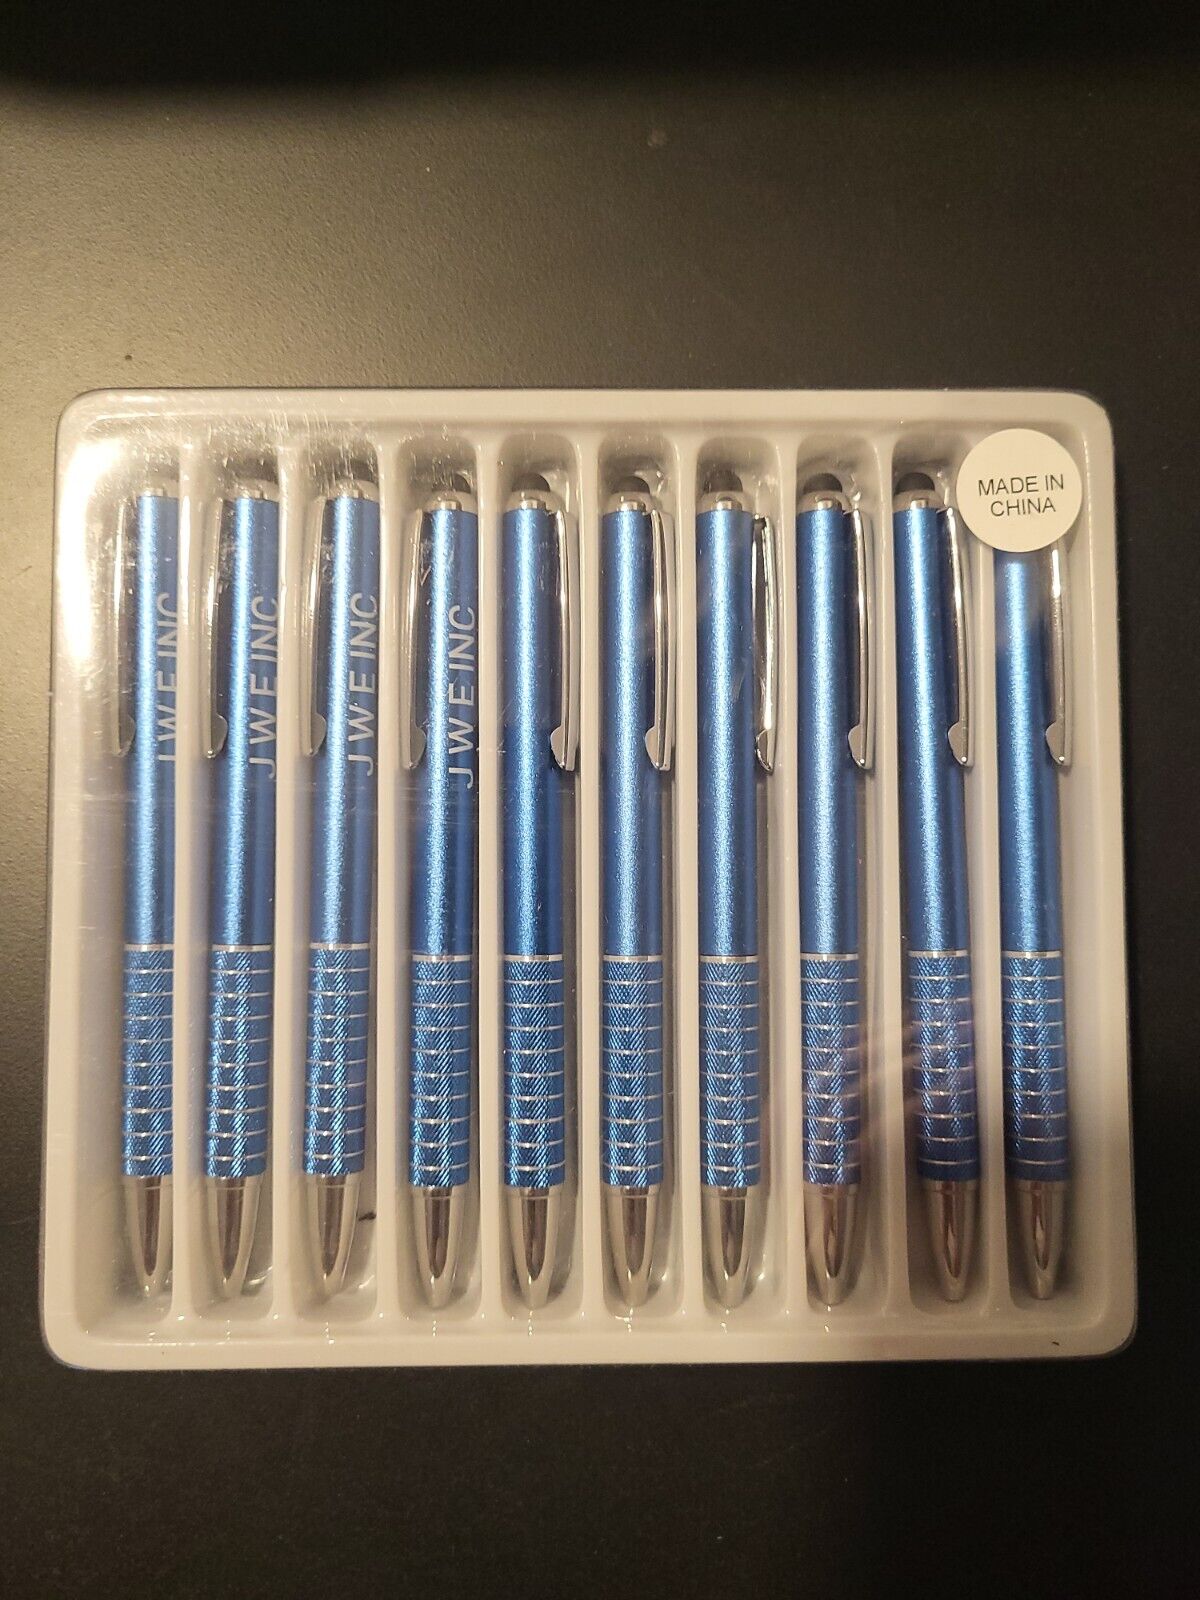 Stylus-pen; 10 Metal Stylus, Twist Ballpoint Pens, by JWE Inc. 